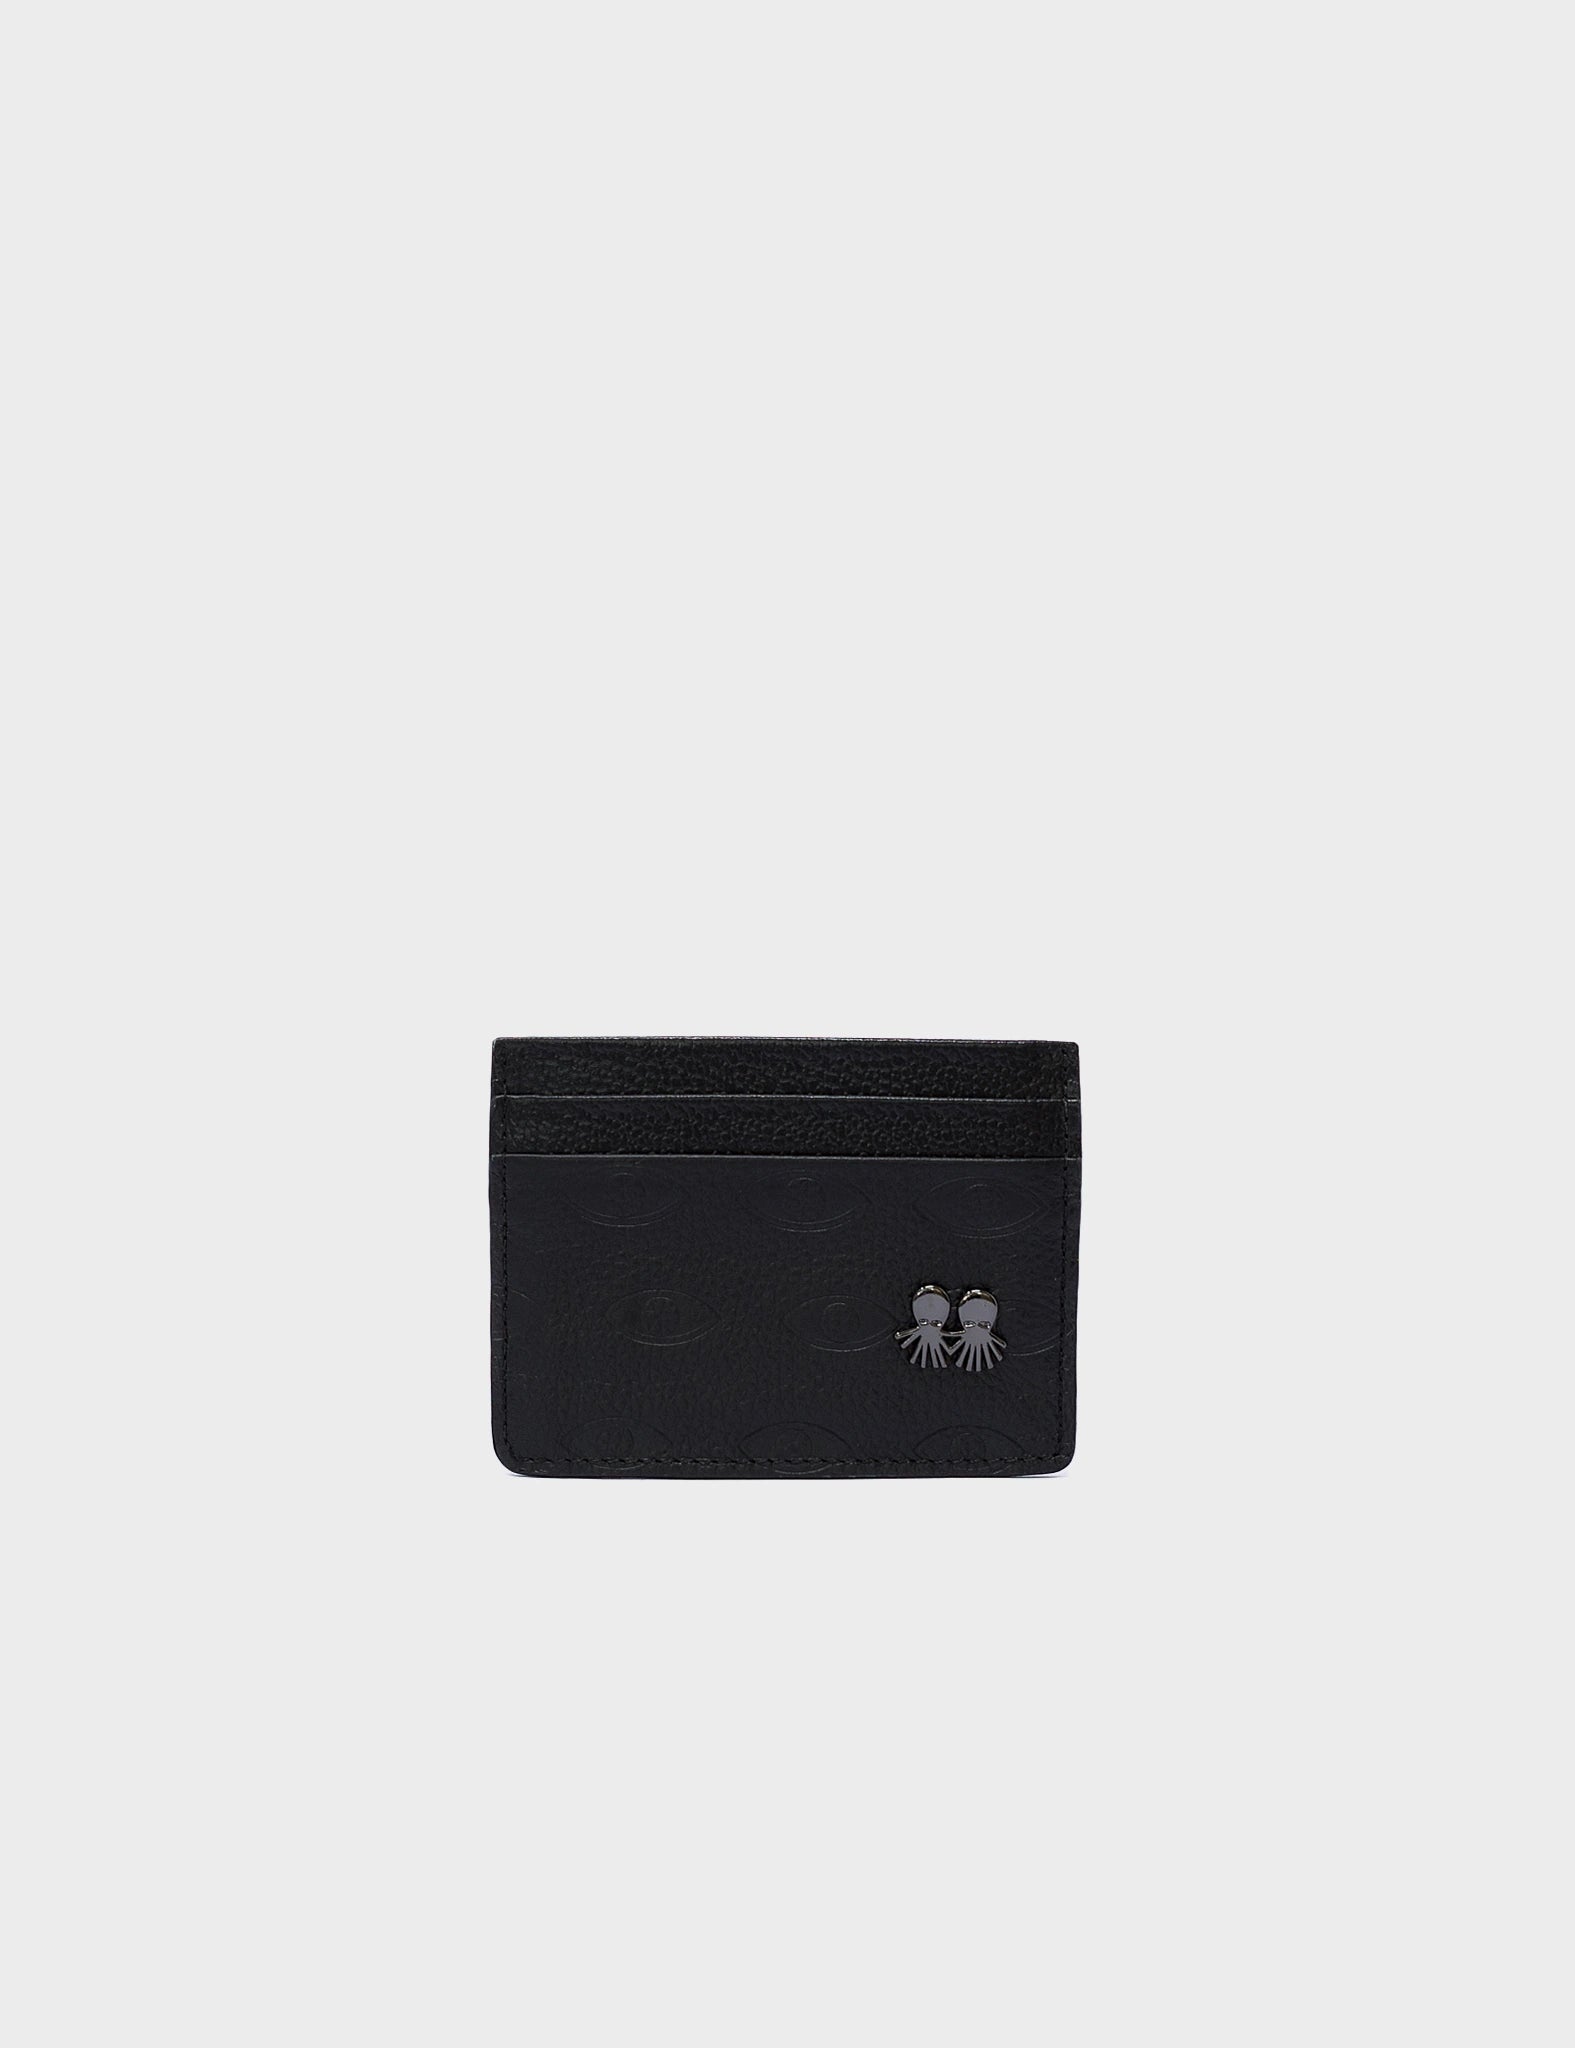 Filium Wallet Black Leather Cardholder - Eyes Pattern Debossed